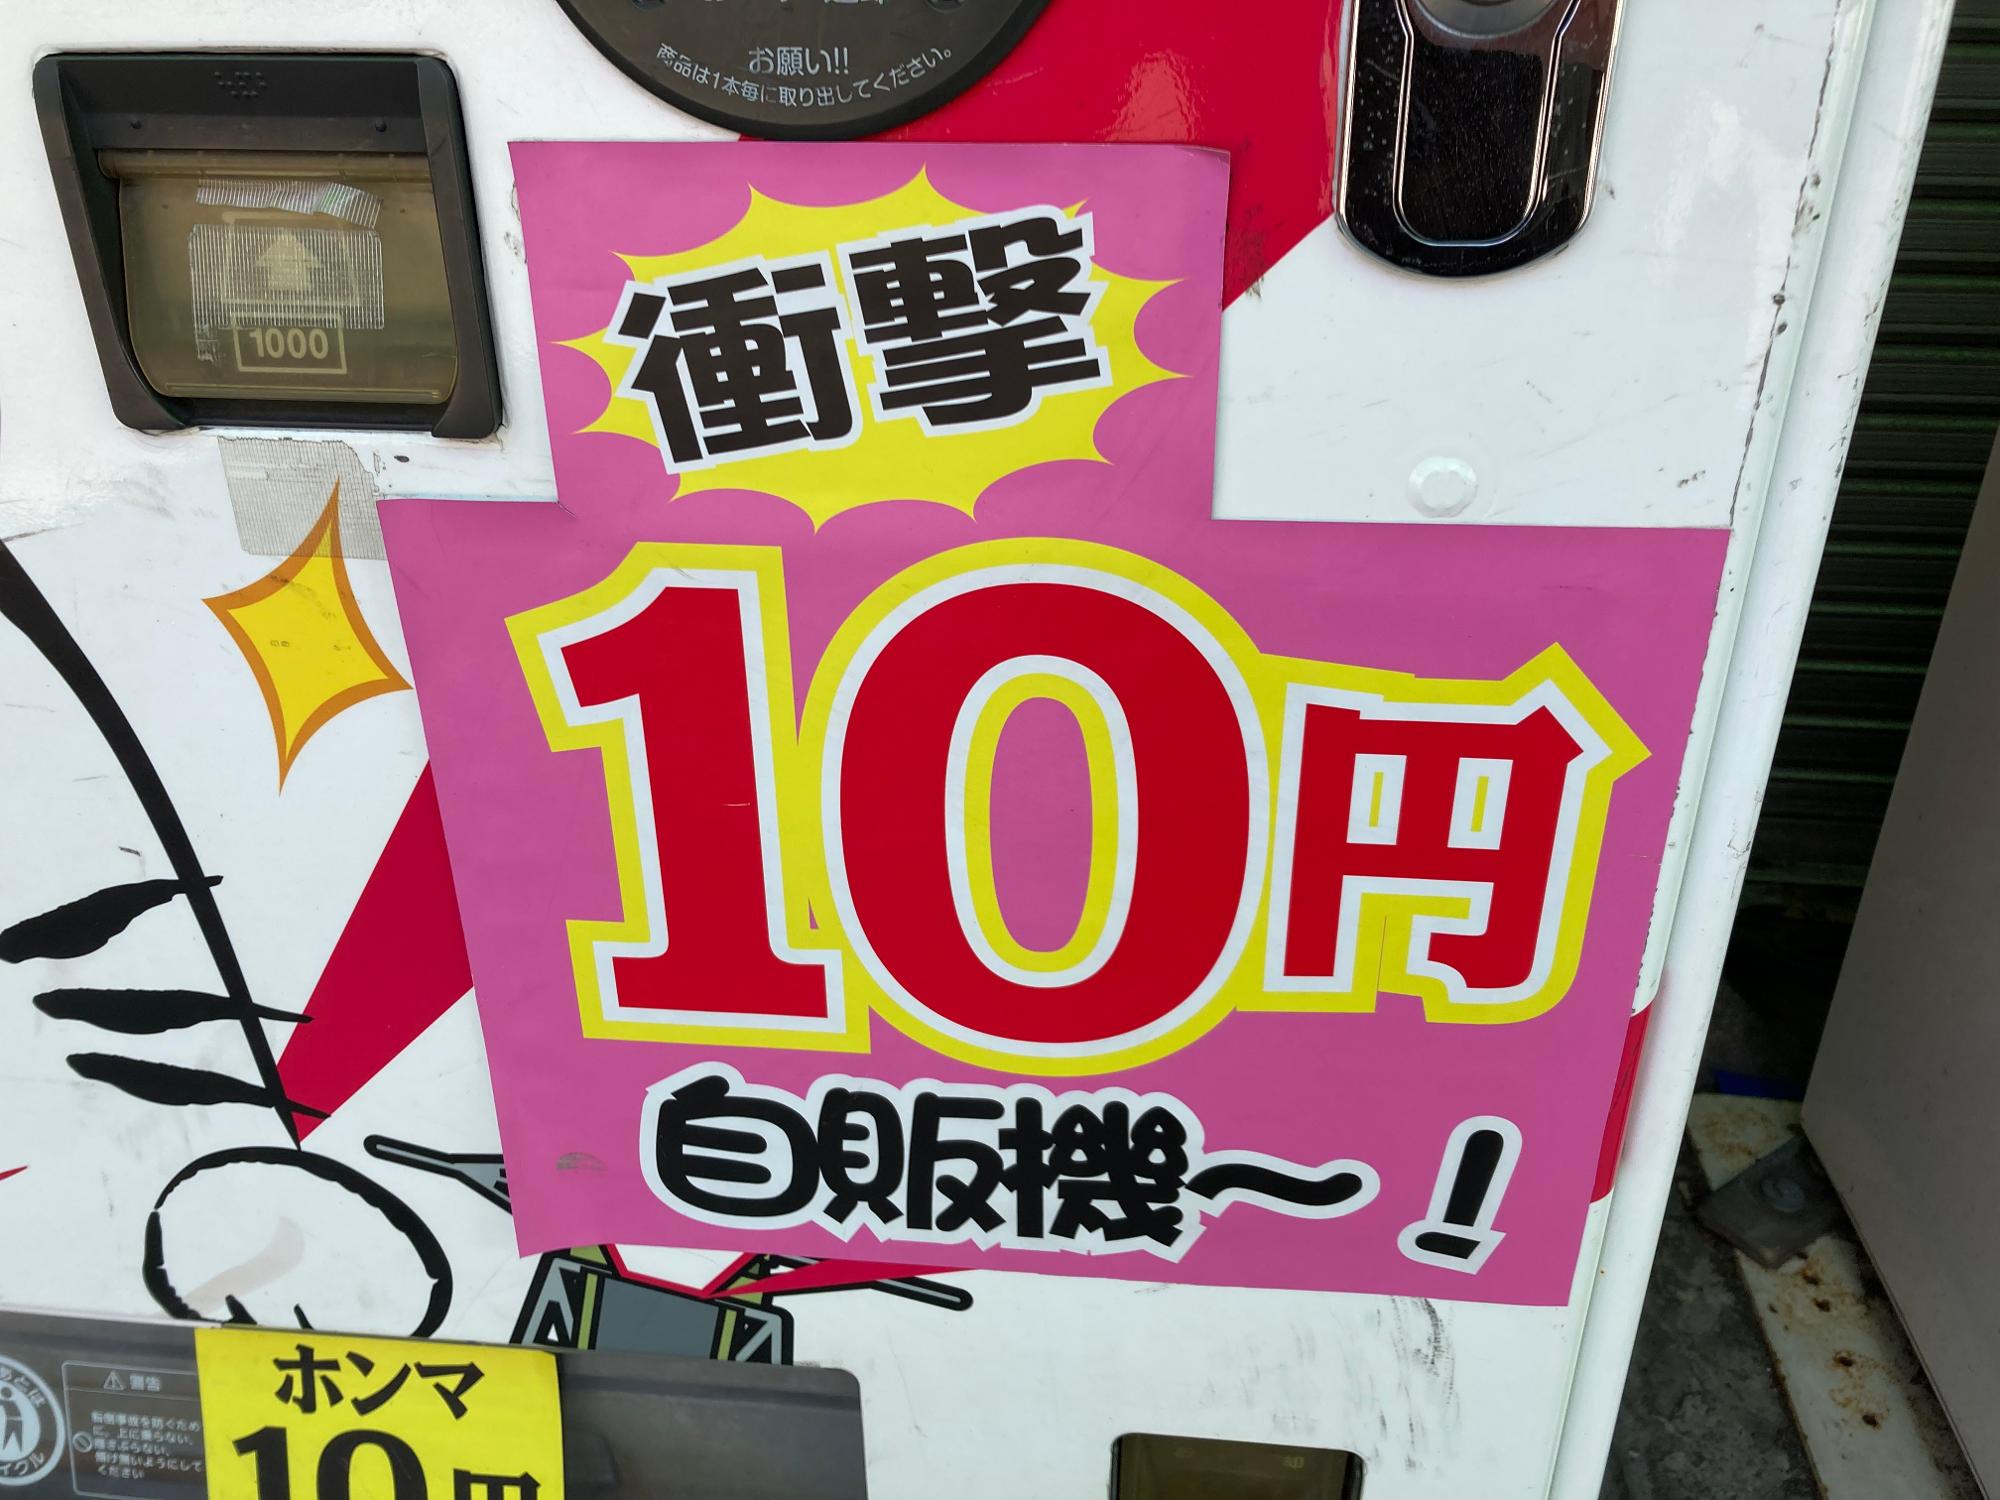 大阪市福島区 何が出るかお楽しみ 玉川3丁目の 10円自動販売機 へ行ってきました ゆっか Yahoo Japan クリエイターズプログラム